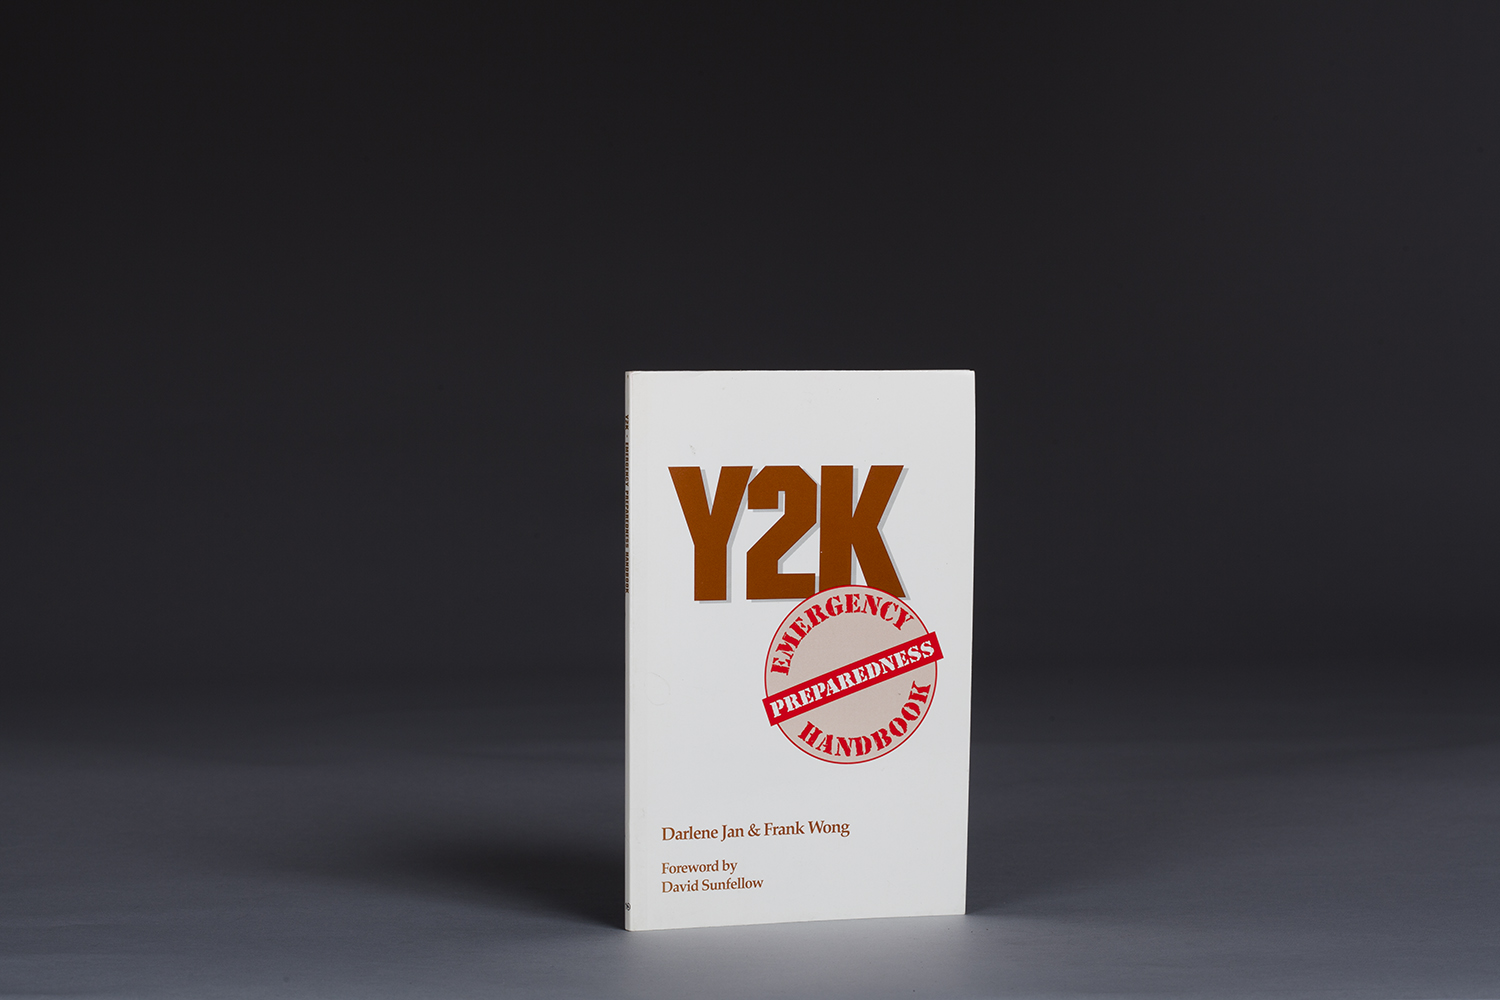 Y2K Emergency Preparedness Handbook - 9988 Cover.jpg